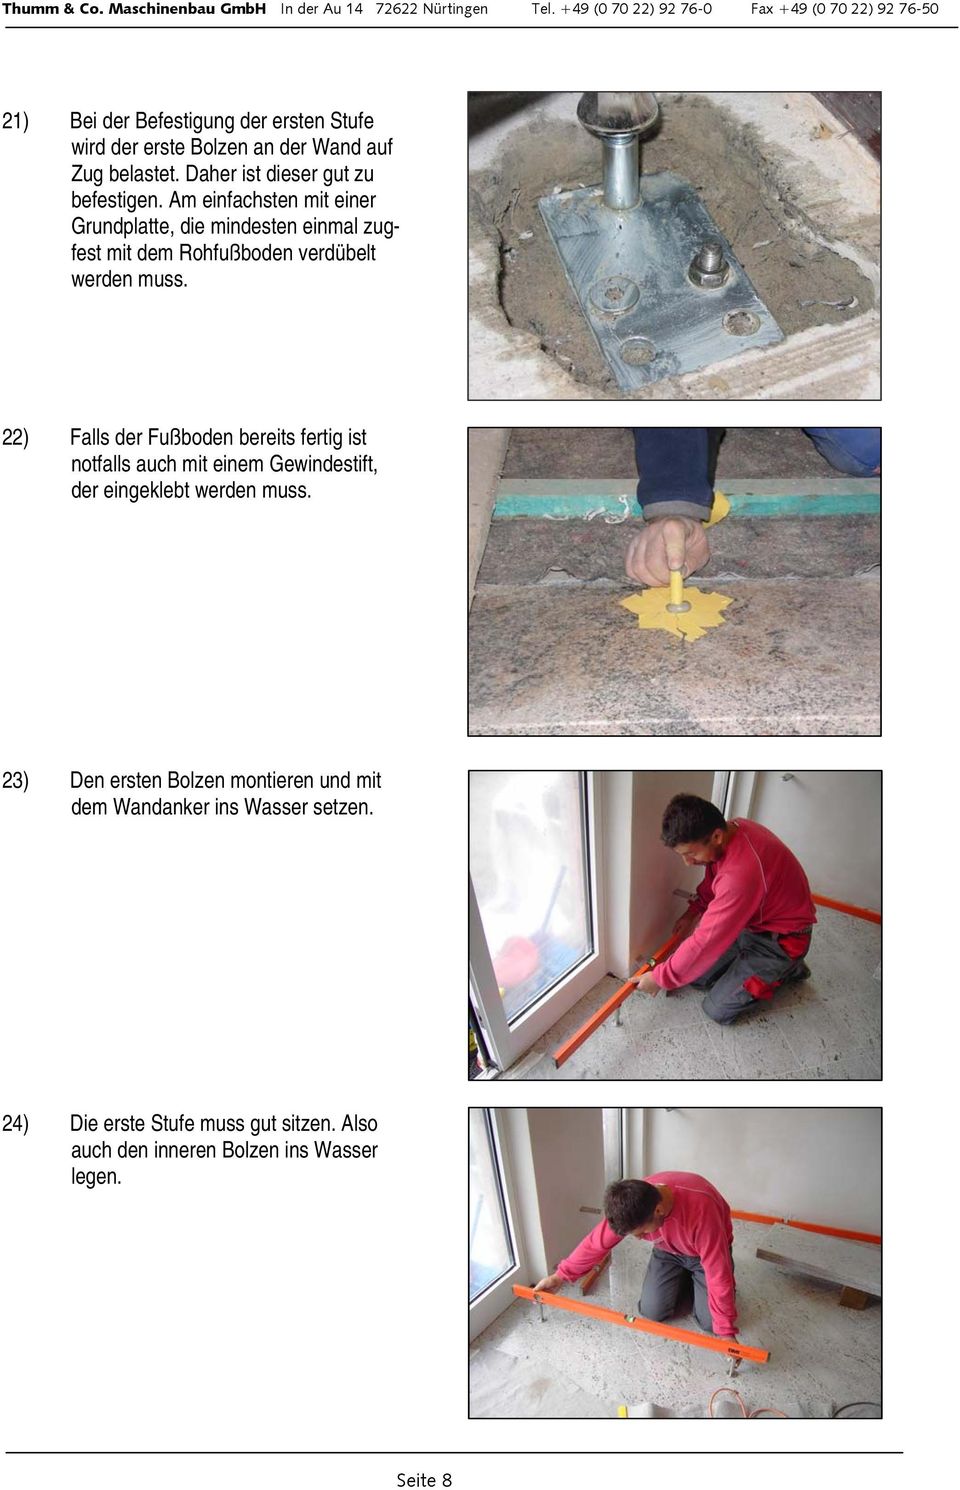 22) Falls der Fußboden bereits fertig ist notfalls auch mit einem Gewindestift, der eingeklebt werden muss.